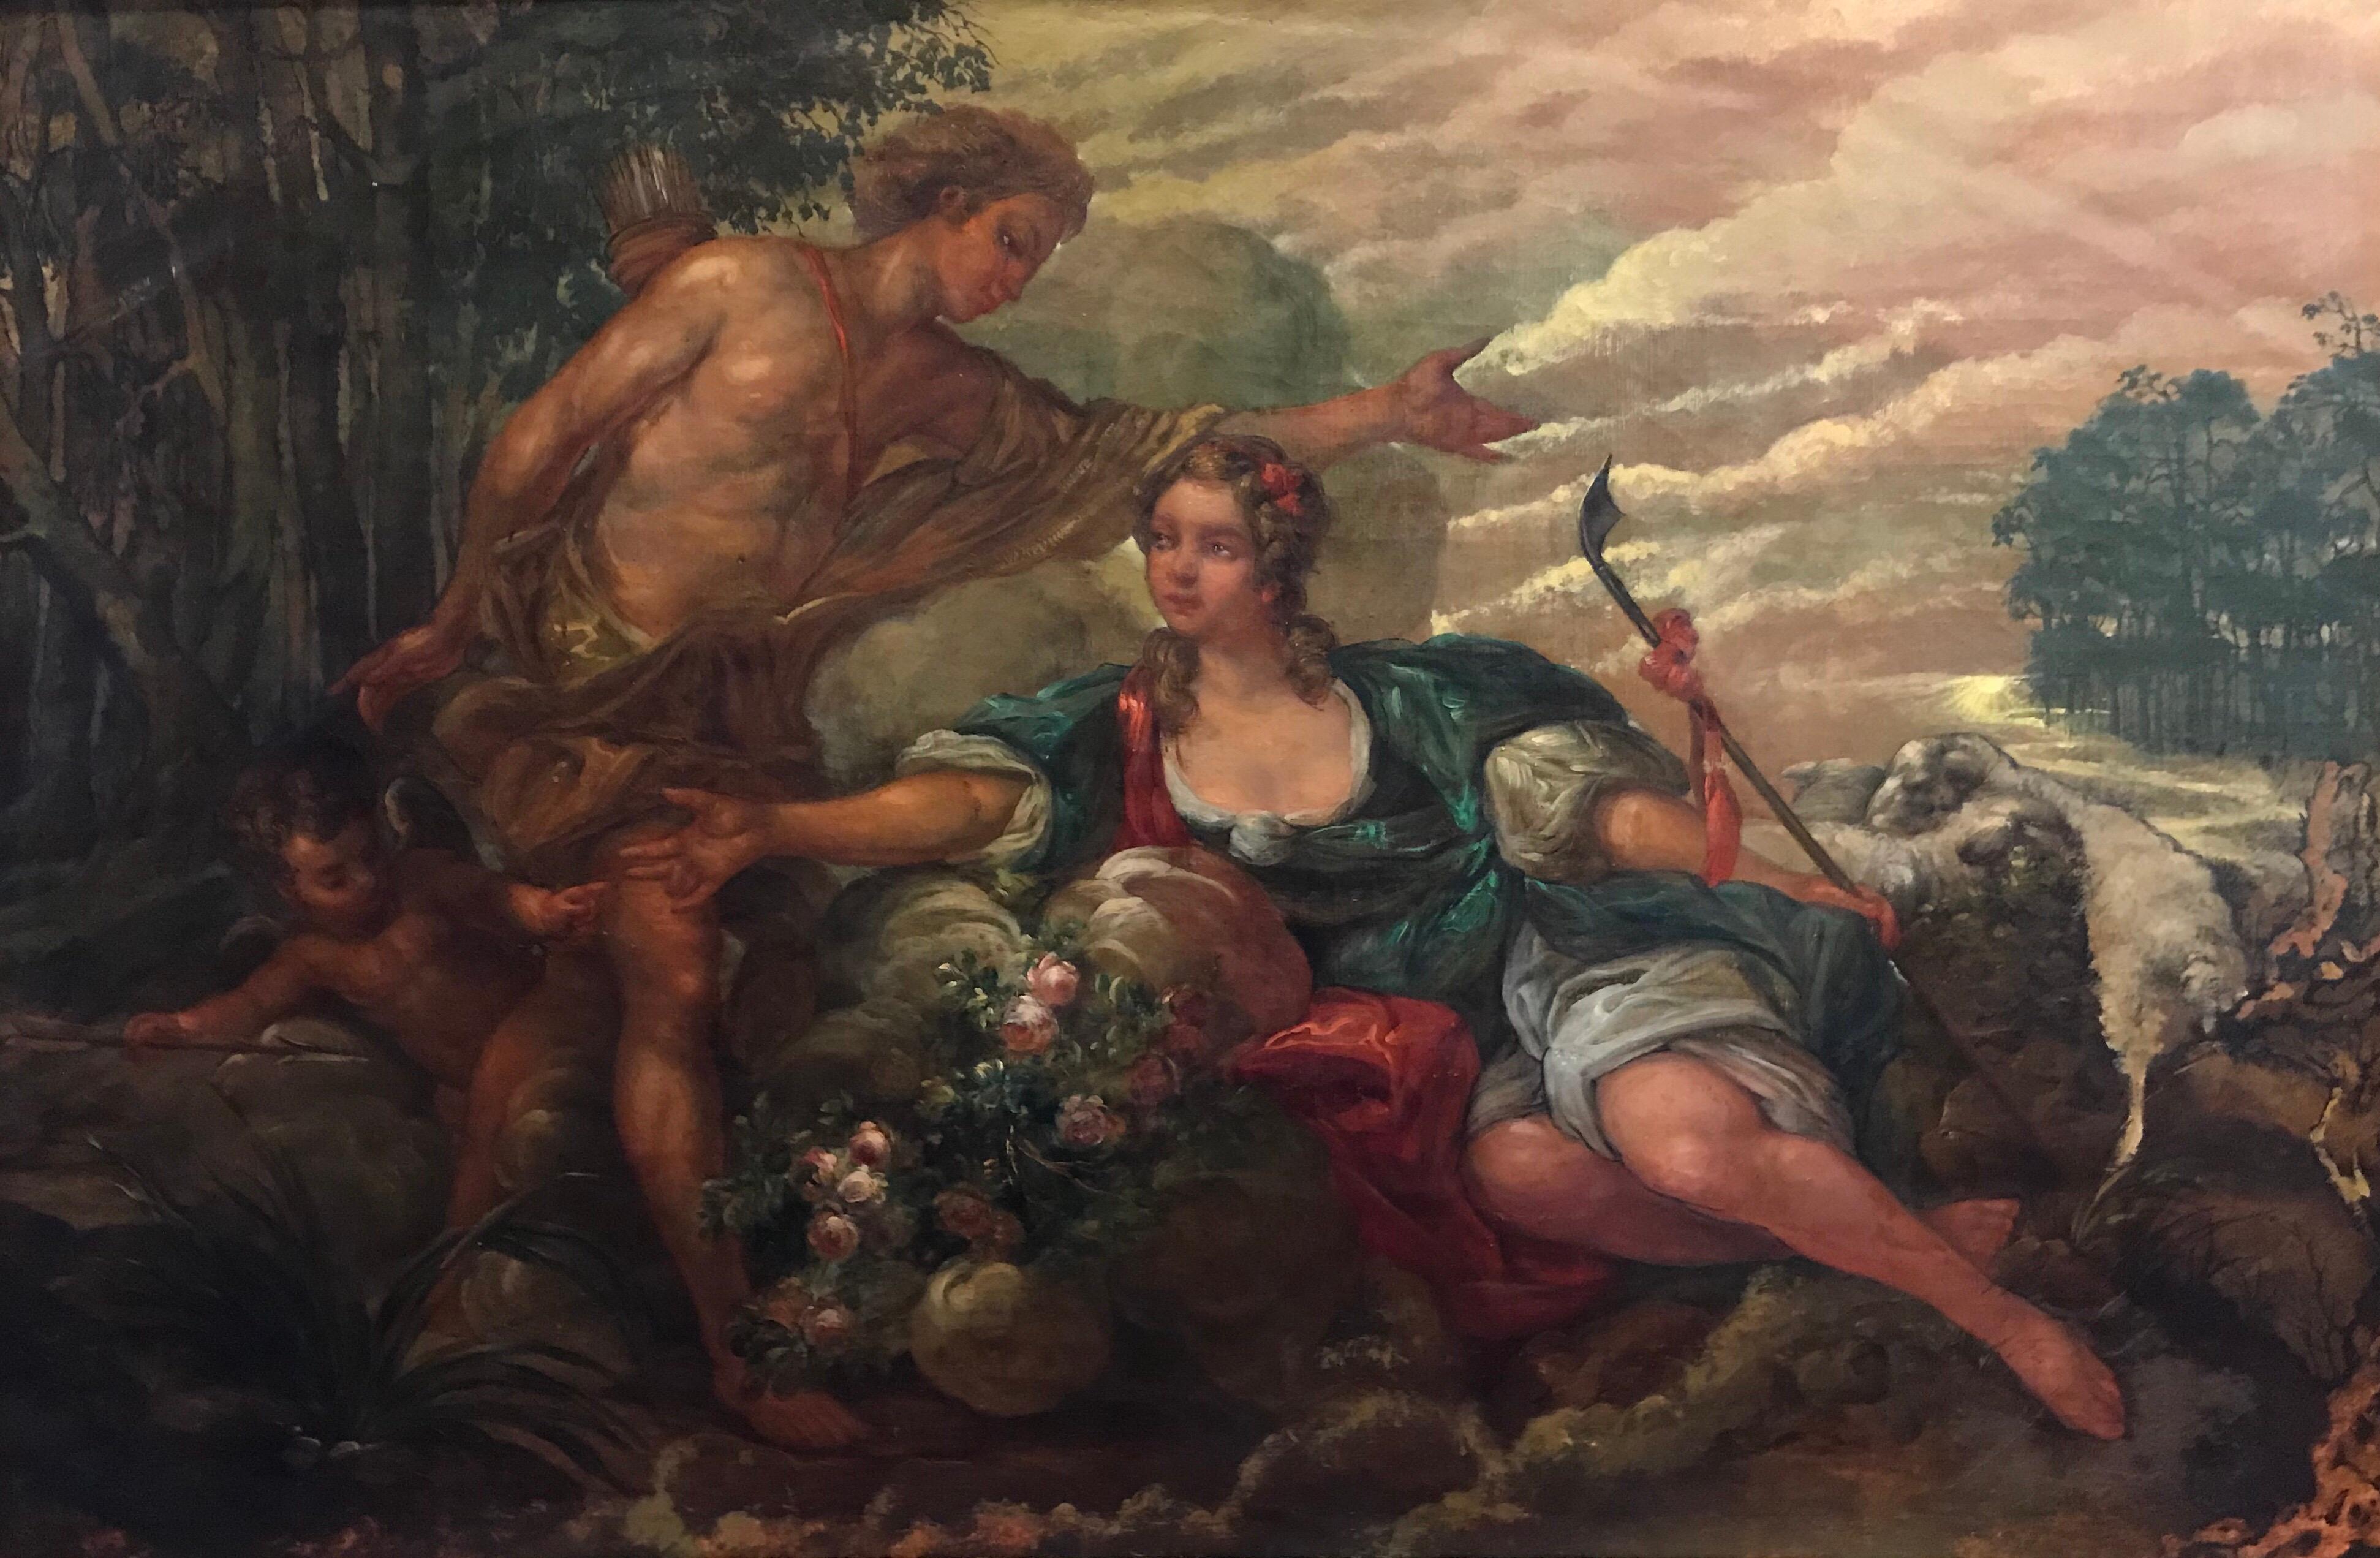 Grande peinture à l'huile rococo française ancienne - Lovers mythologiques dans un paysage - Painting de French Rococo